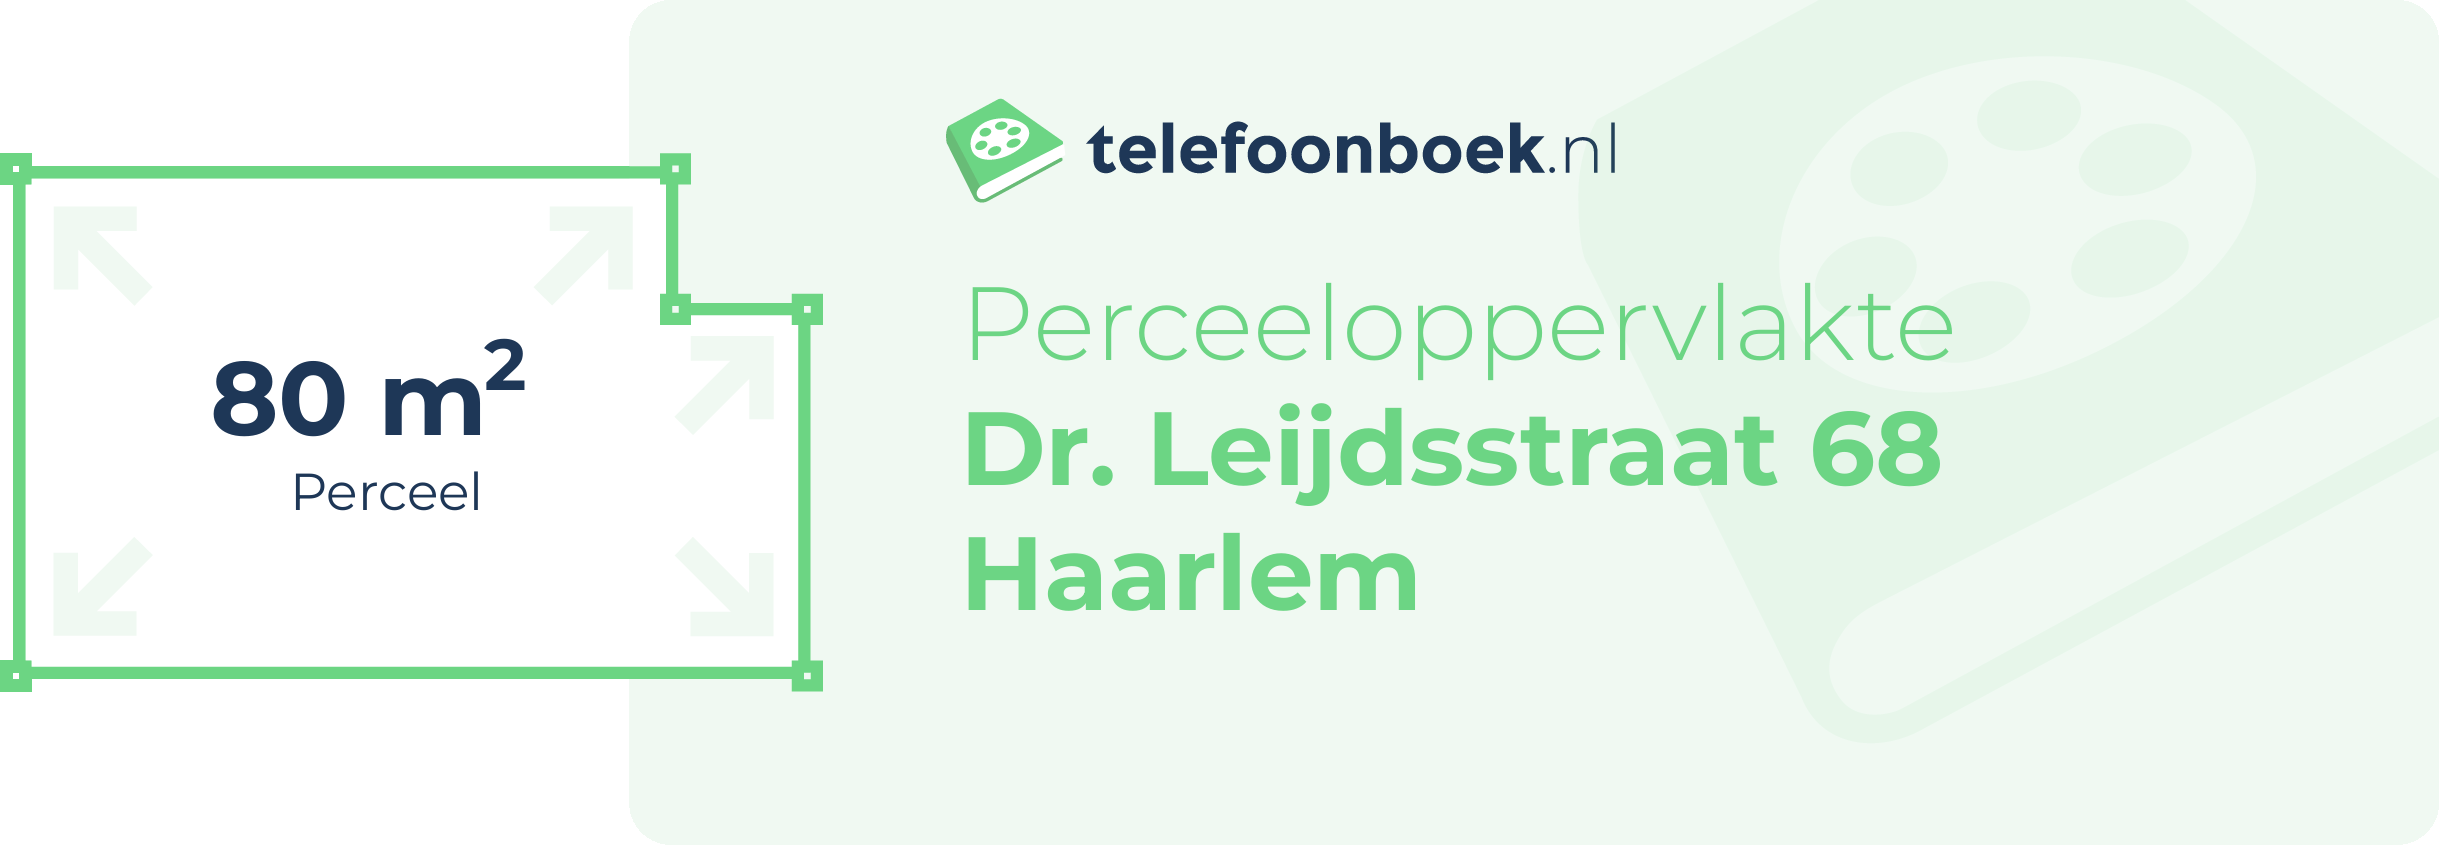 Perceeloppervlakte Dr. Leijdsstraat 68 Haarlem